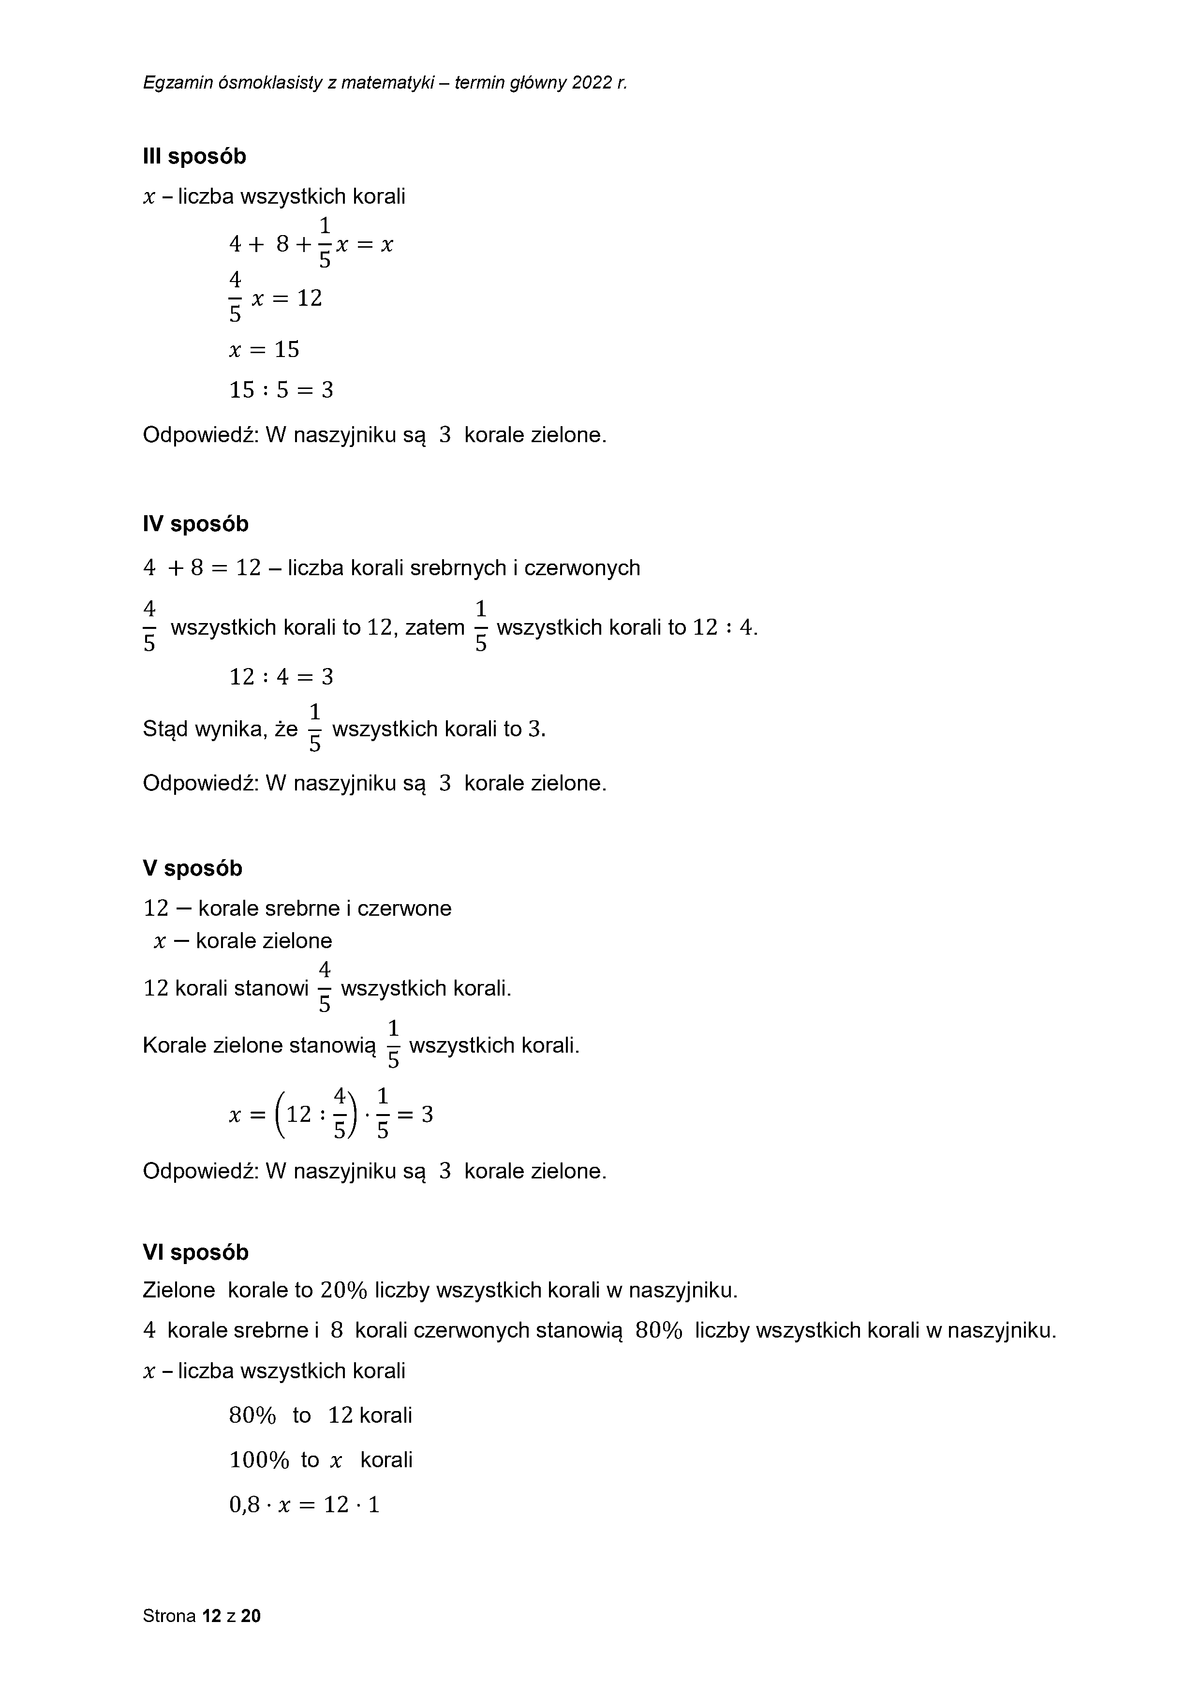 zasady oceniania - odpowiedzi - matematyka - egzamin ósmoklasisty 2022 - 0012